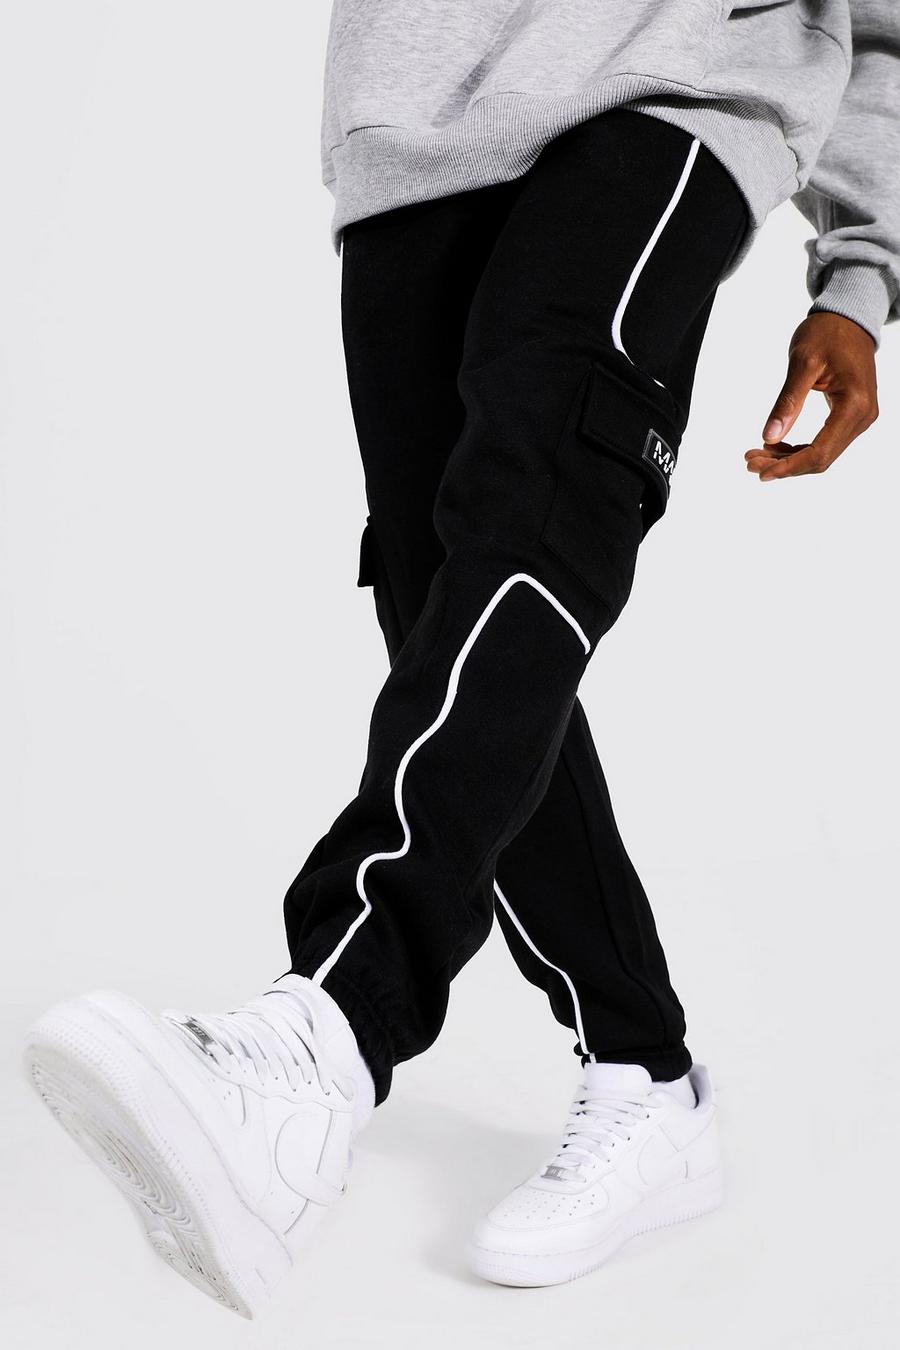 שחור negro מכנסי ריצה דגמ'ח בעיטור פסים דקים ותווית גומי עם כיתוב Man